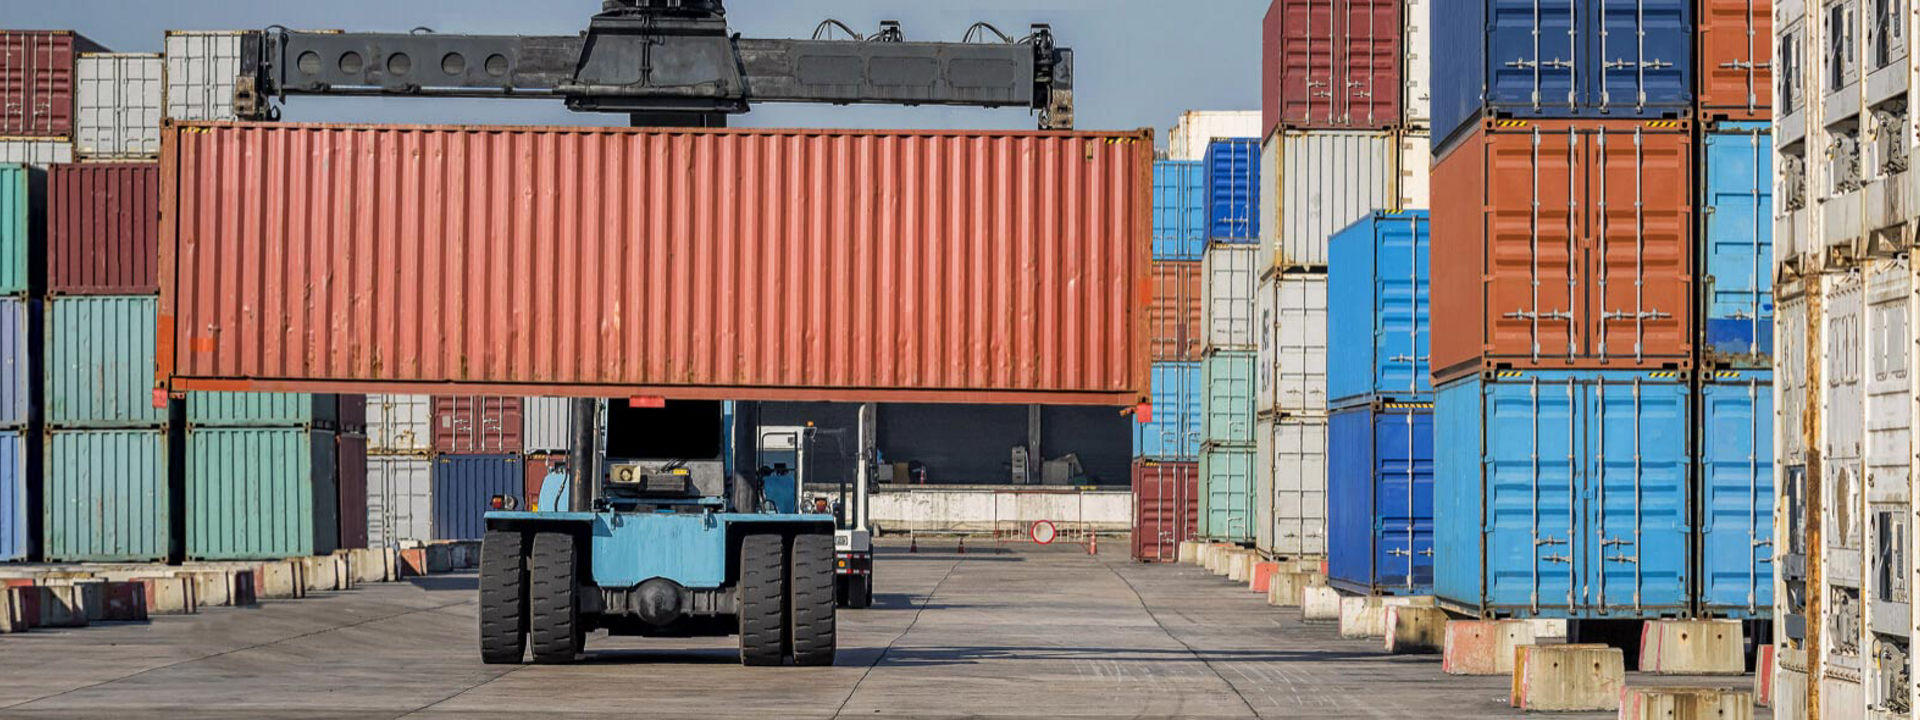 Un truck forklift equipaggiato con pneumatici movimento terra Bridgestone mentre sposta dei container in un grande porto industriale